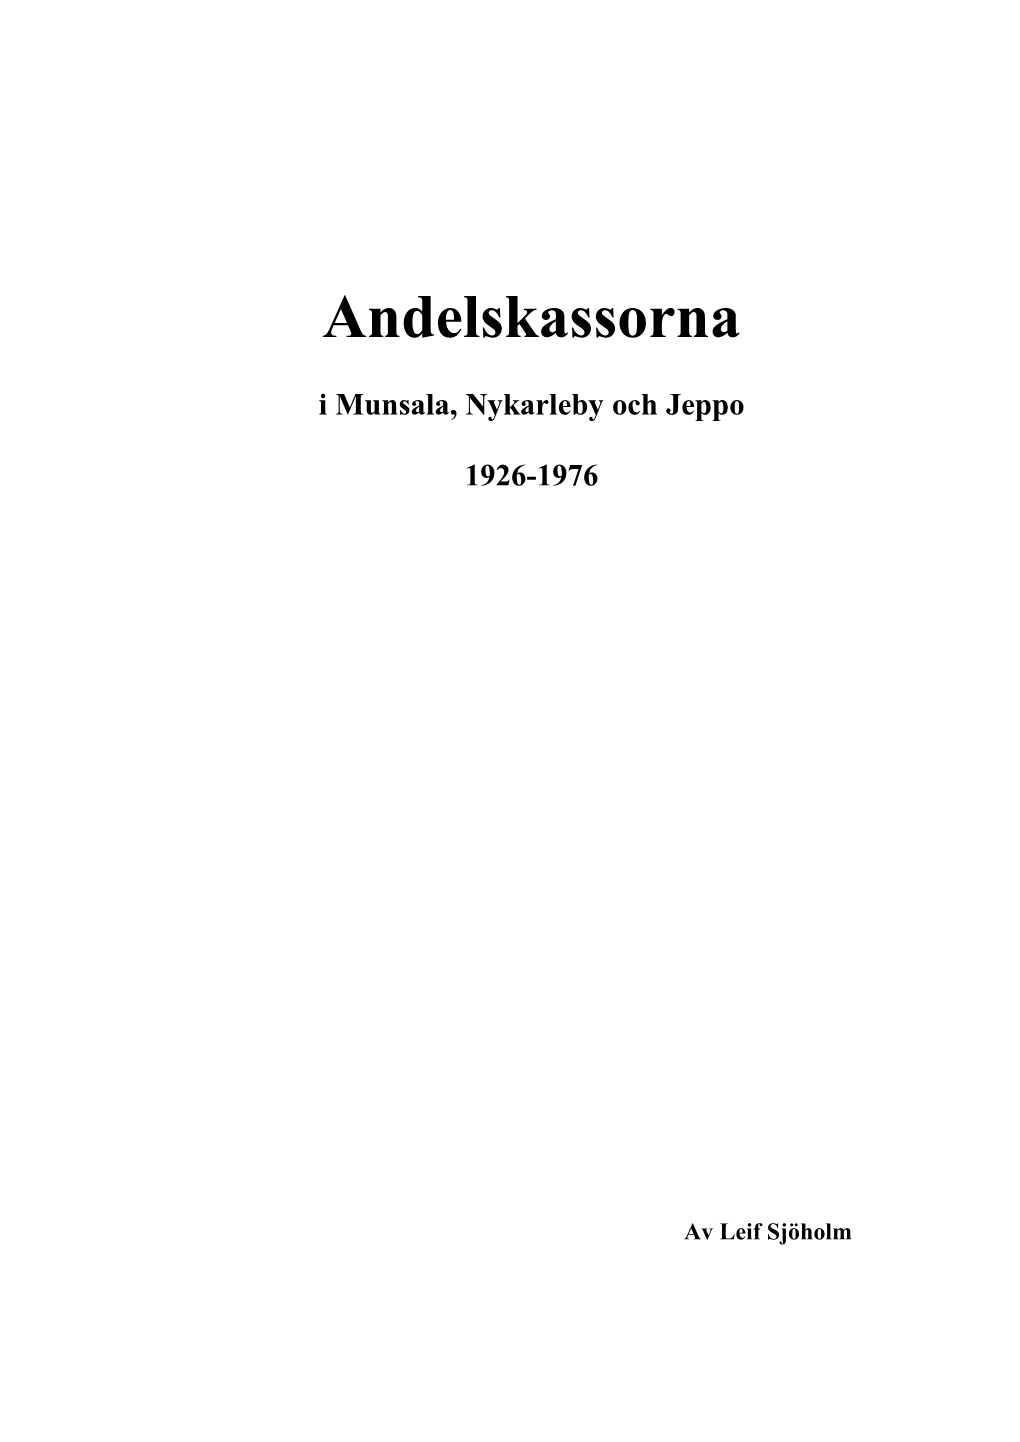 Finlands Första Andelskassa Grundades 1902